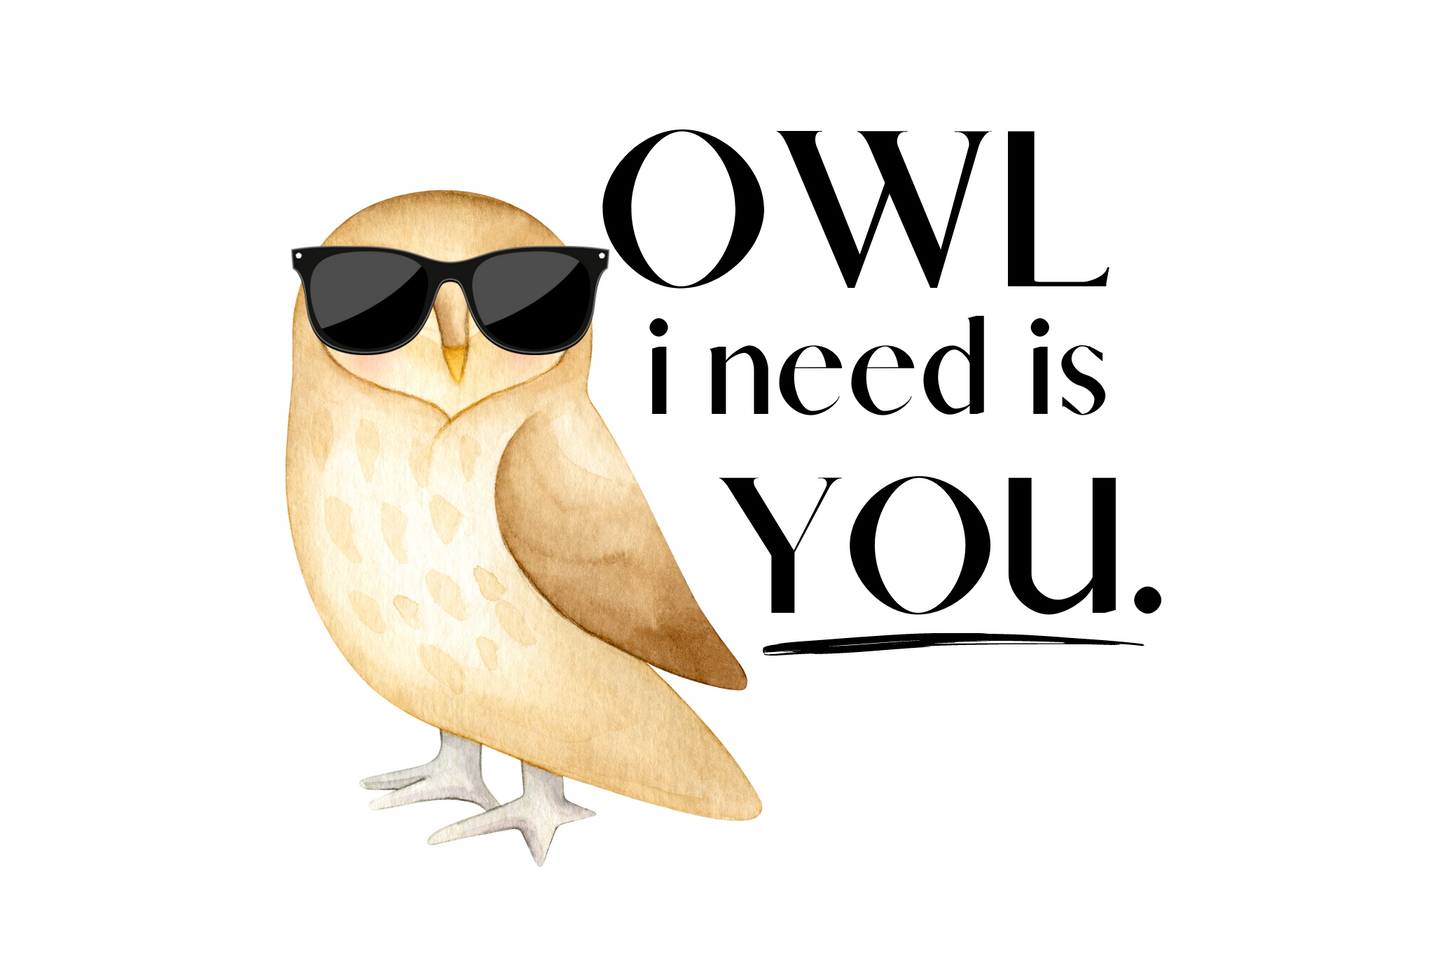 OWL i need is you.